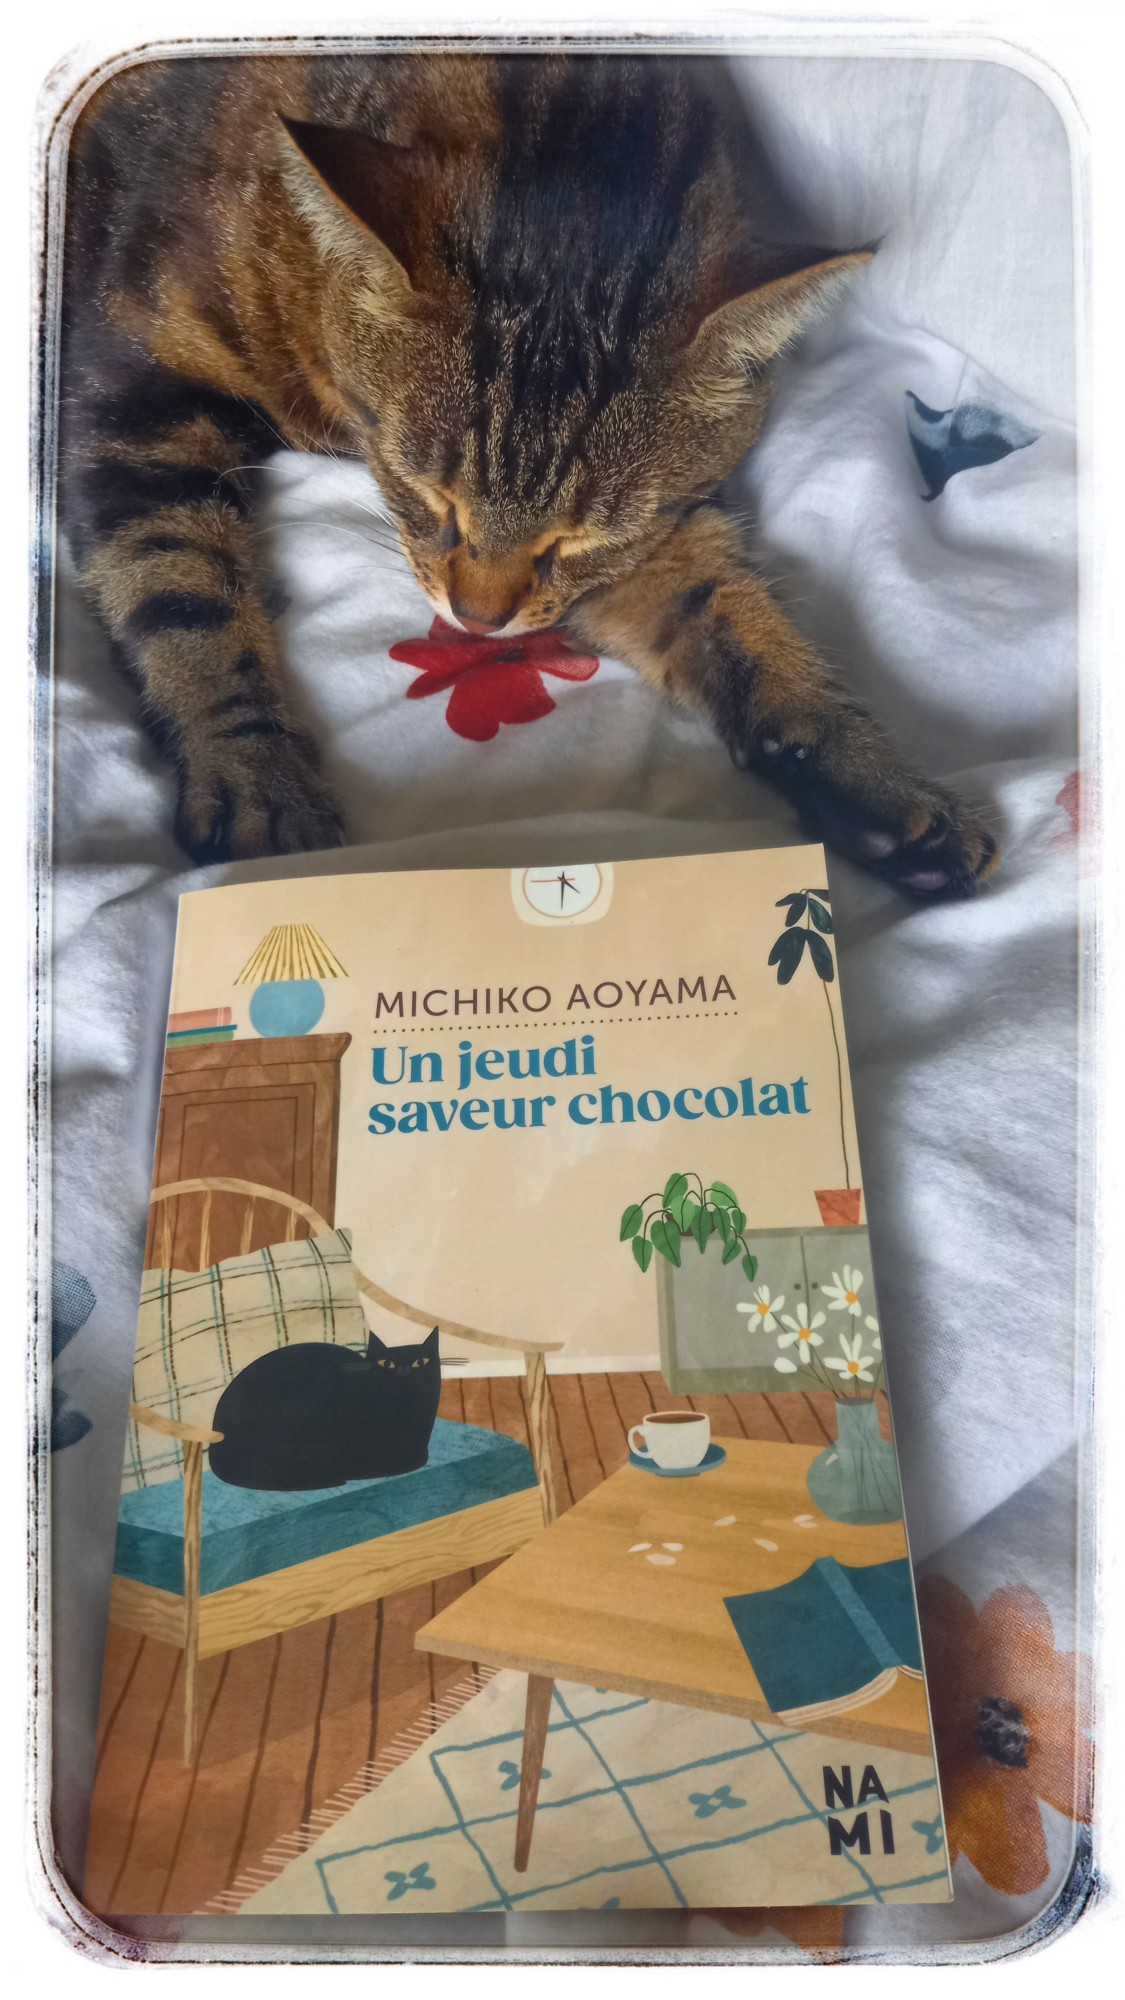 Un jeudi saveur chocolat » de Michiko AOYAMA – Sonia boulimique des livres  – Blog littéraire – Chroniques